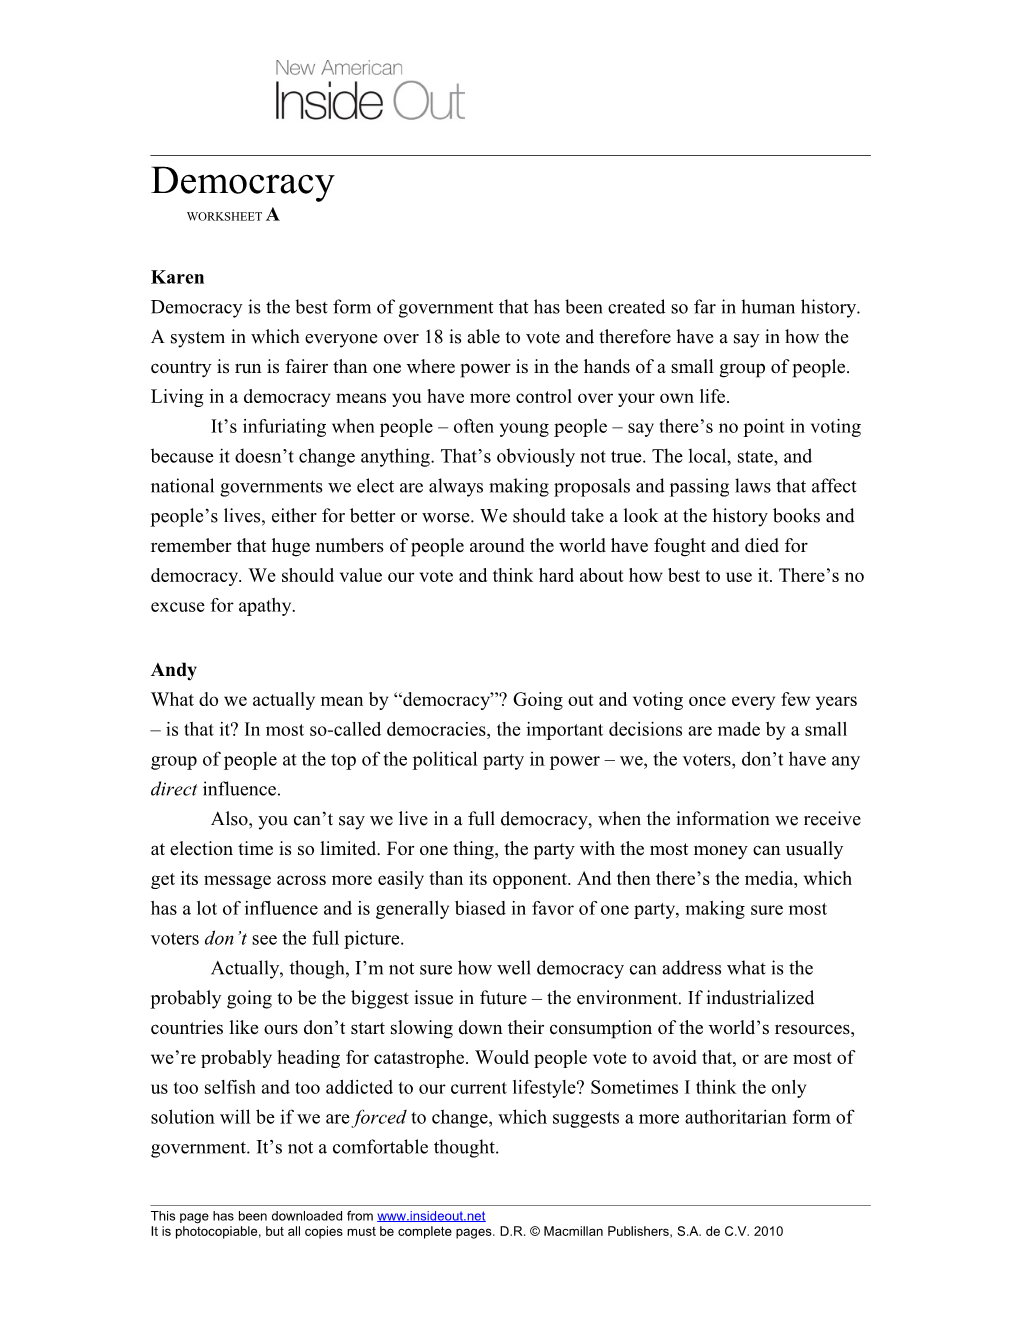 Democracy Worksheet A